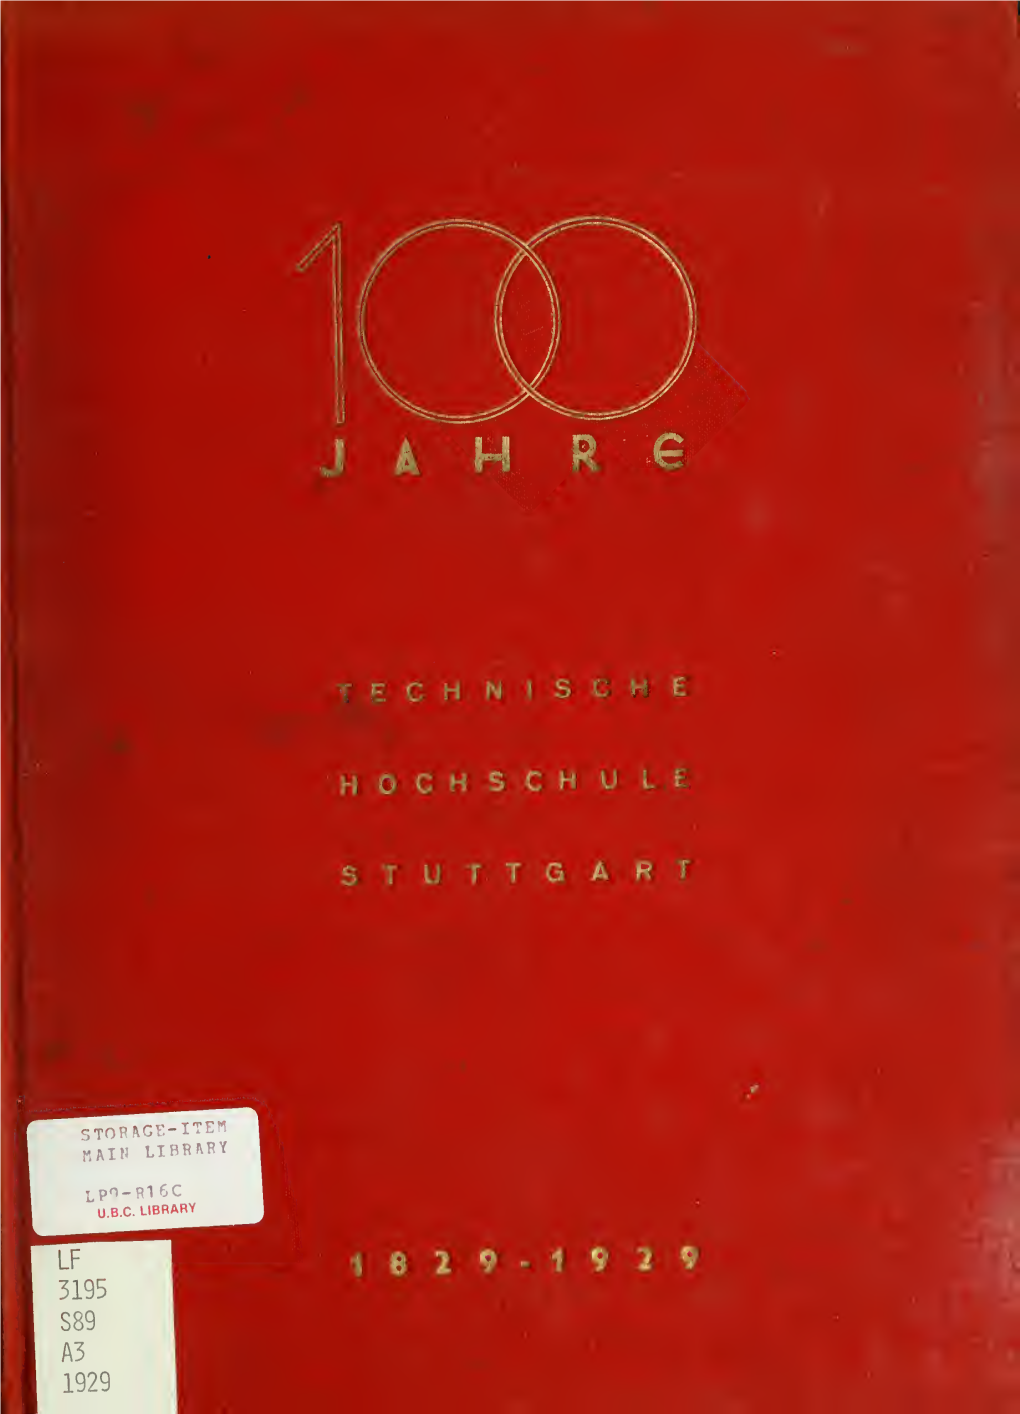 100 Jahre Technische Hochschule, Stuttgart. Zur Jubiläumsfeier 15.-18. Mai 1929